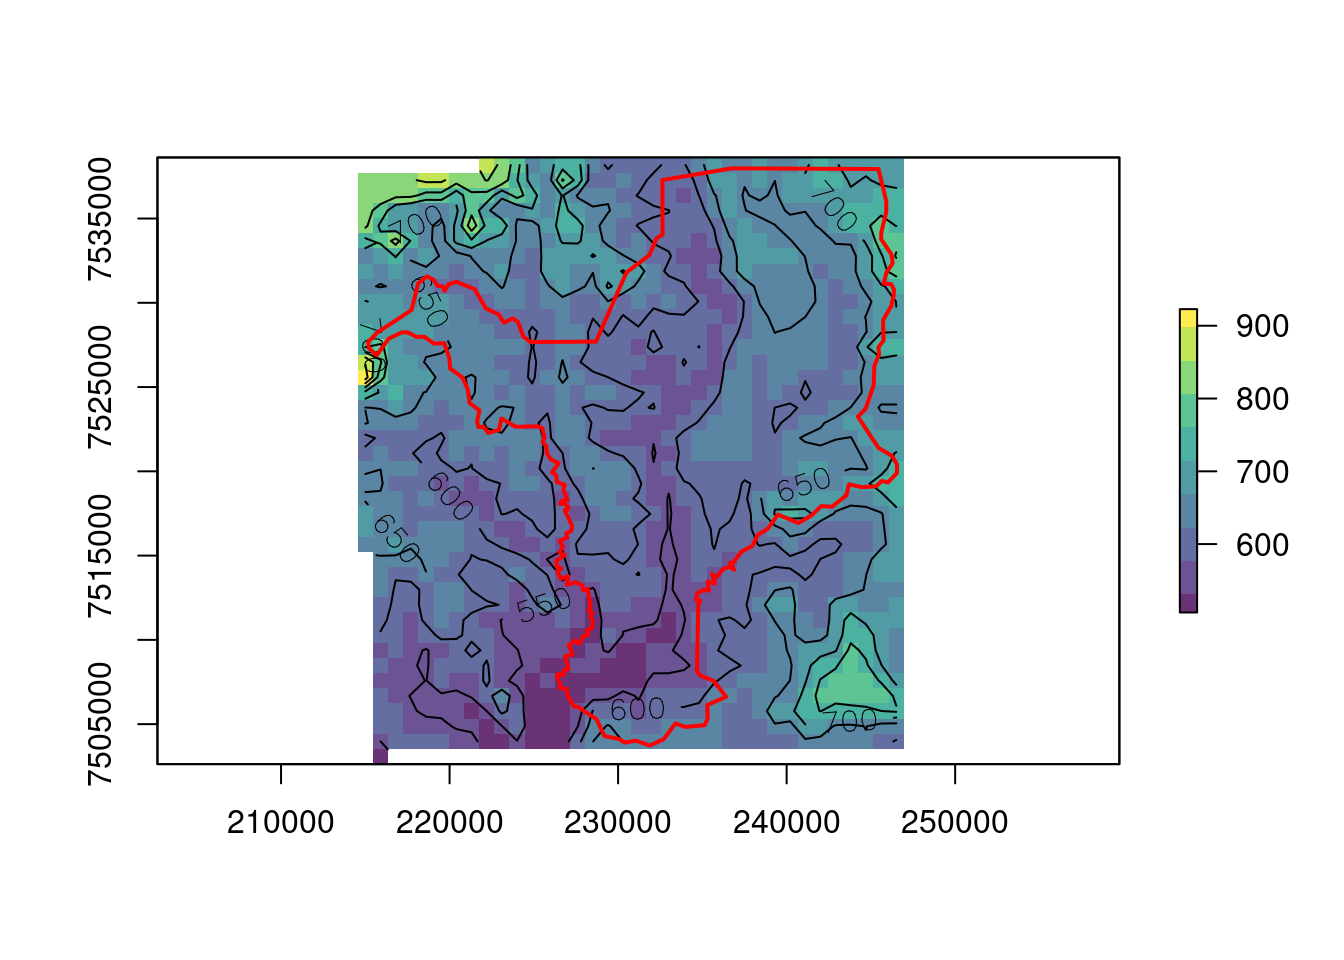 Vetorização do raster de elevação criando isolinhas para Rio Claro/SP.